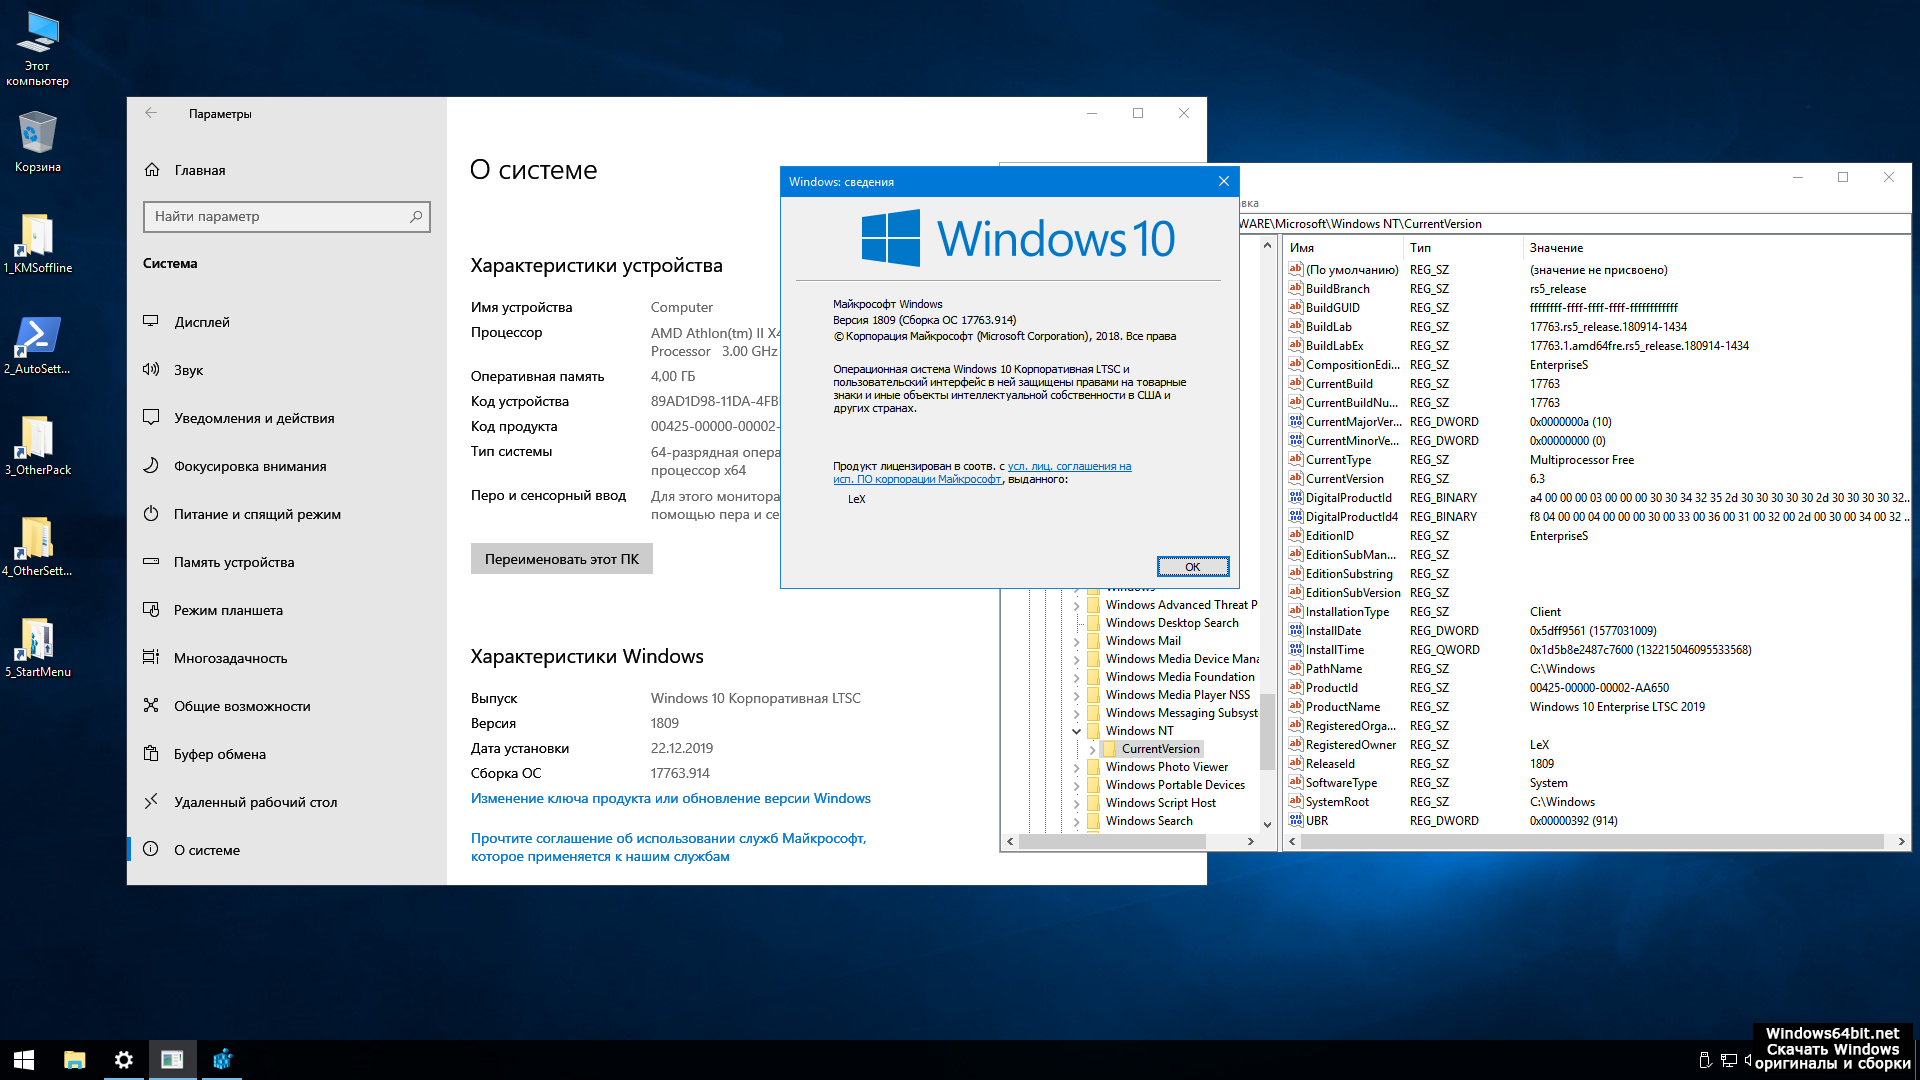 Windows 10 как использовать. Windows 10 Enterprise (корпоративная). Винда 10. Редакции виндовс 10. Система виндовс 10.